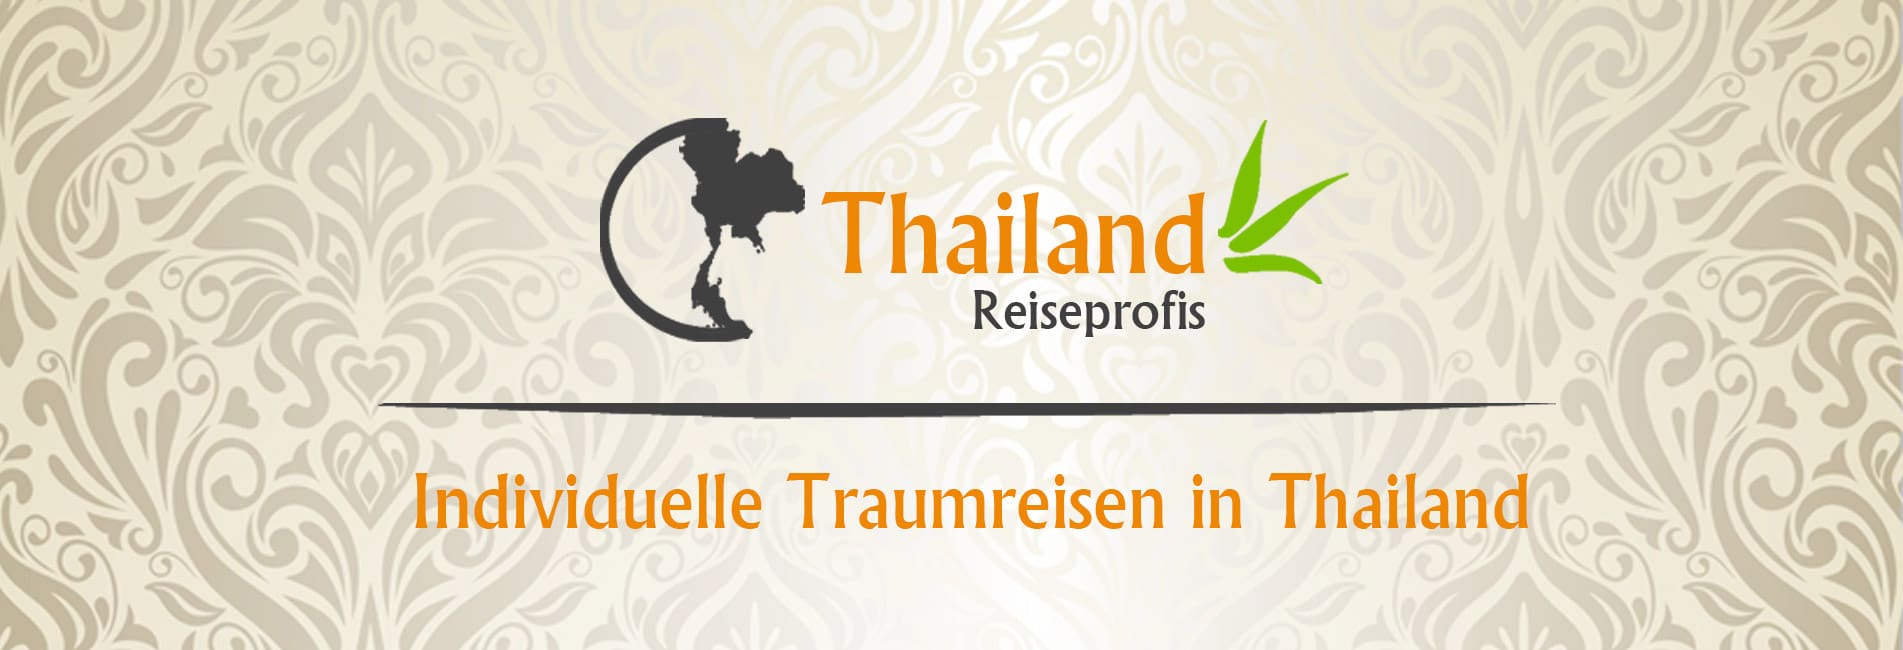 (c) Thailand-reiseprofis.com